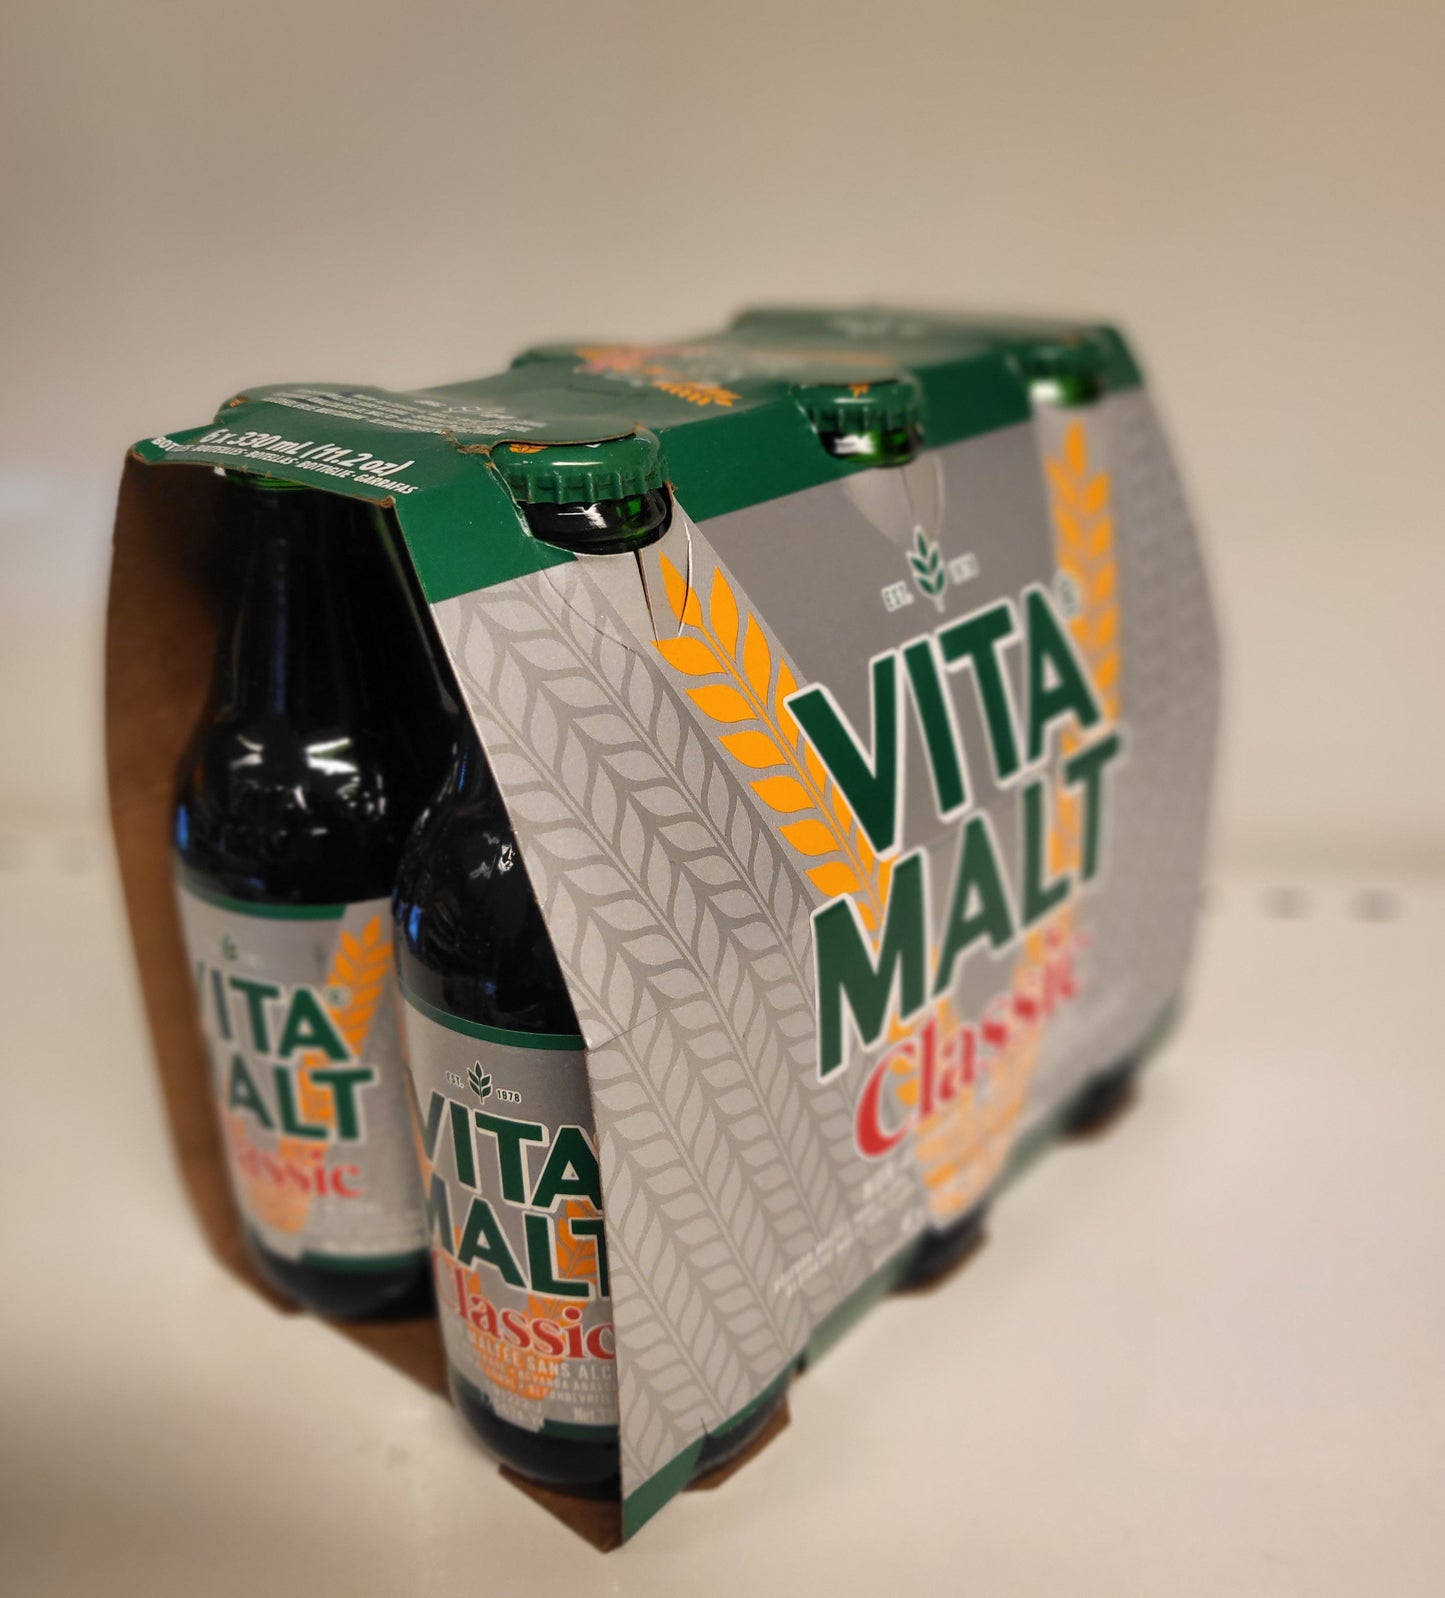 Vita Malt Classique 6 x 330ml